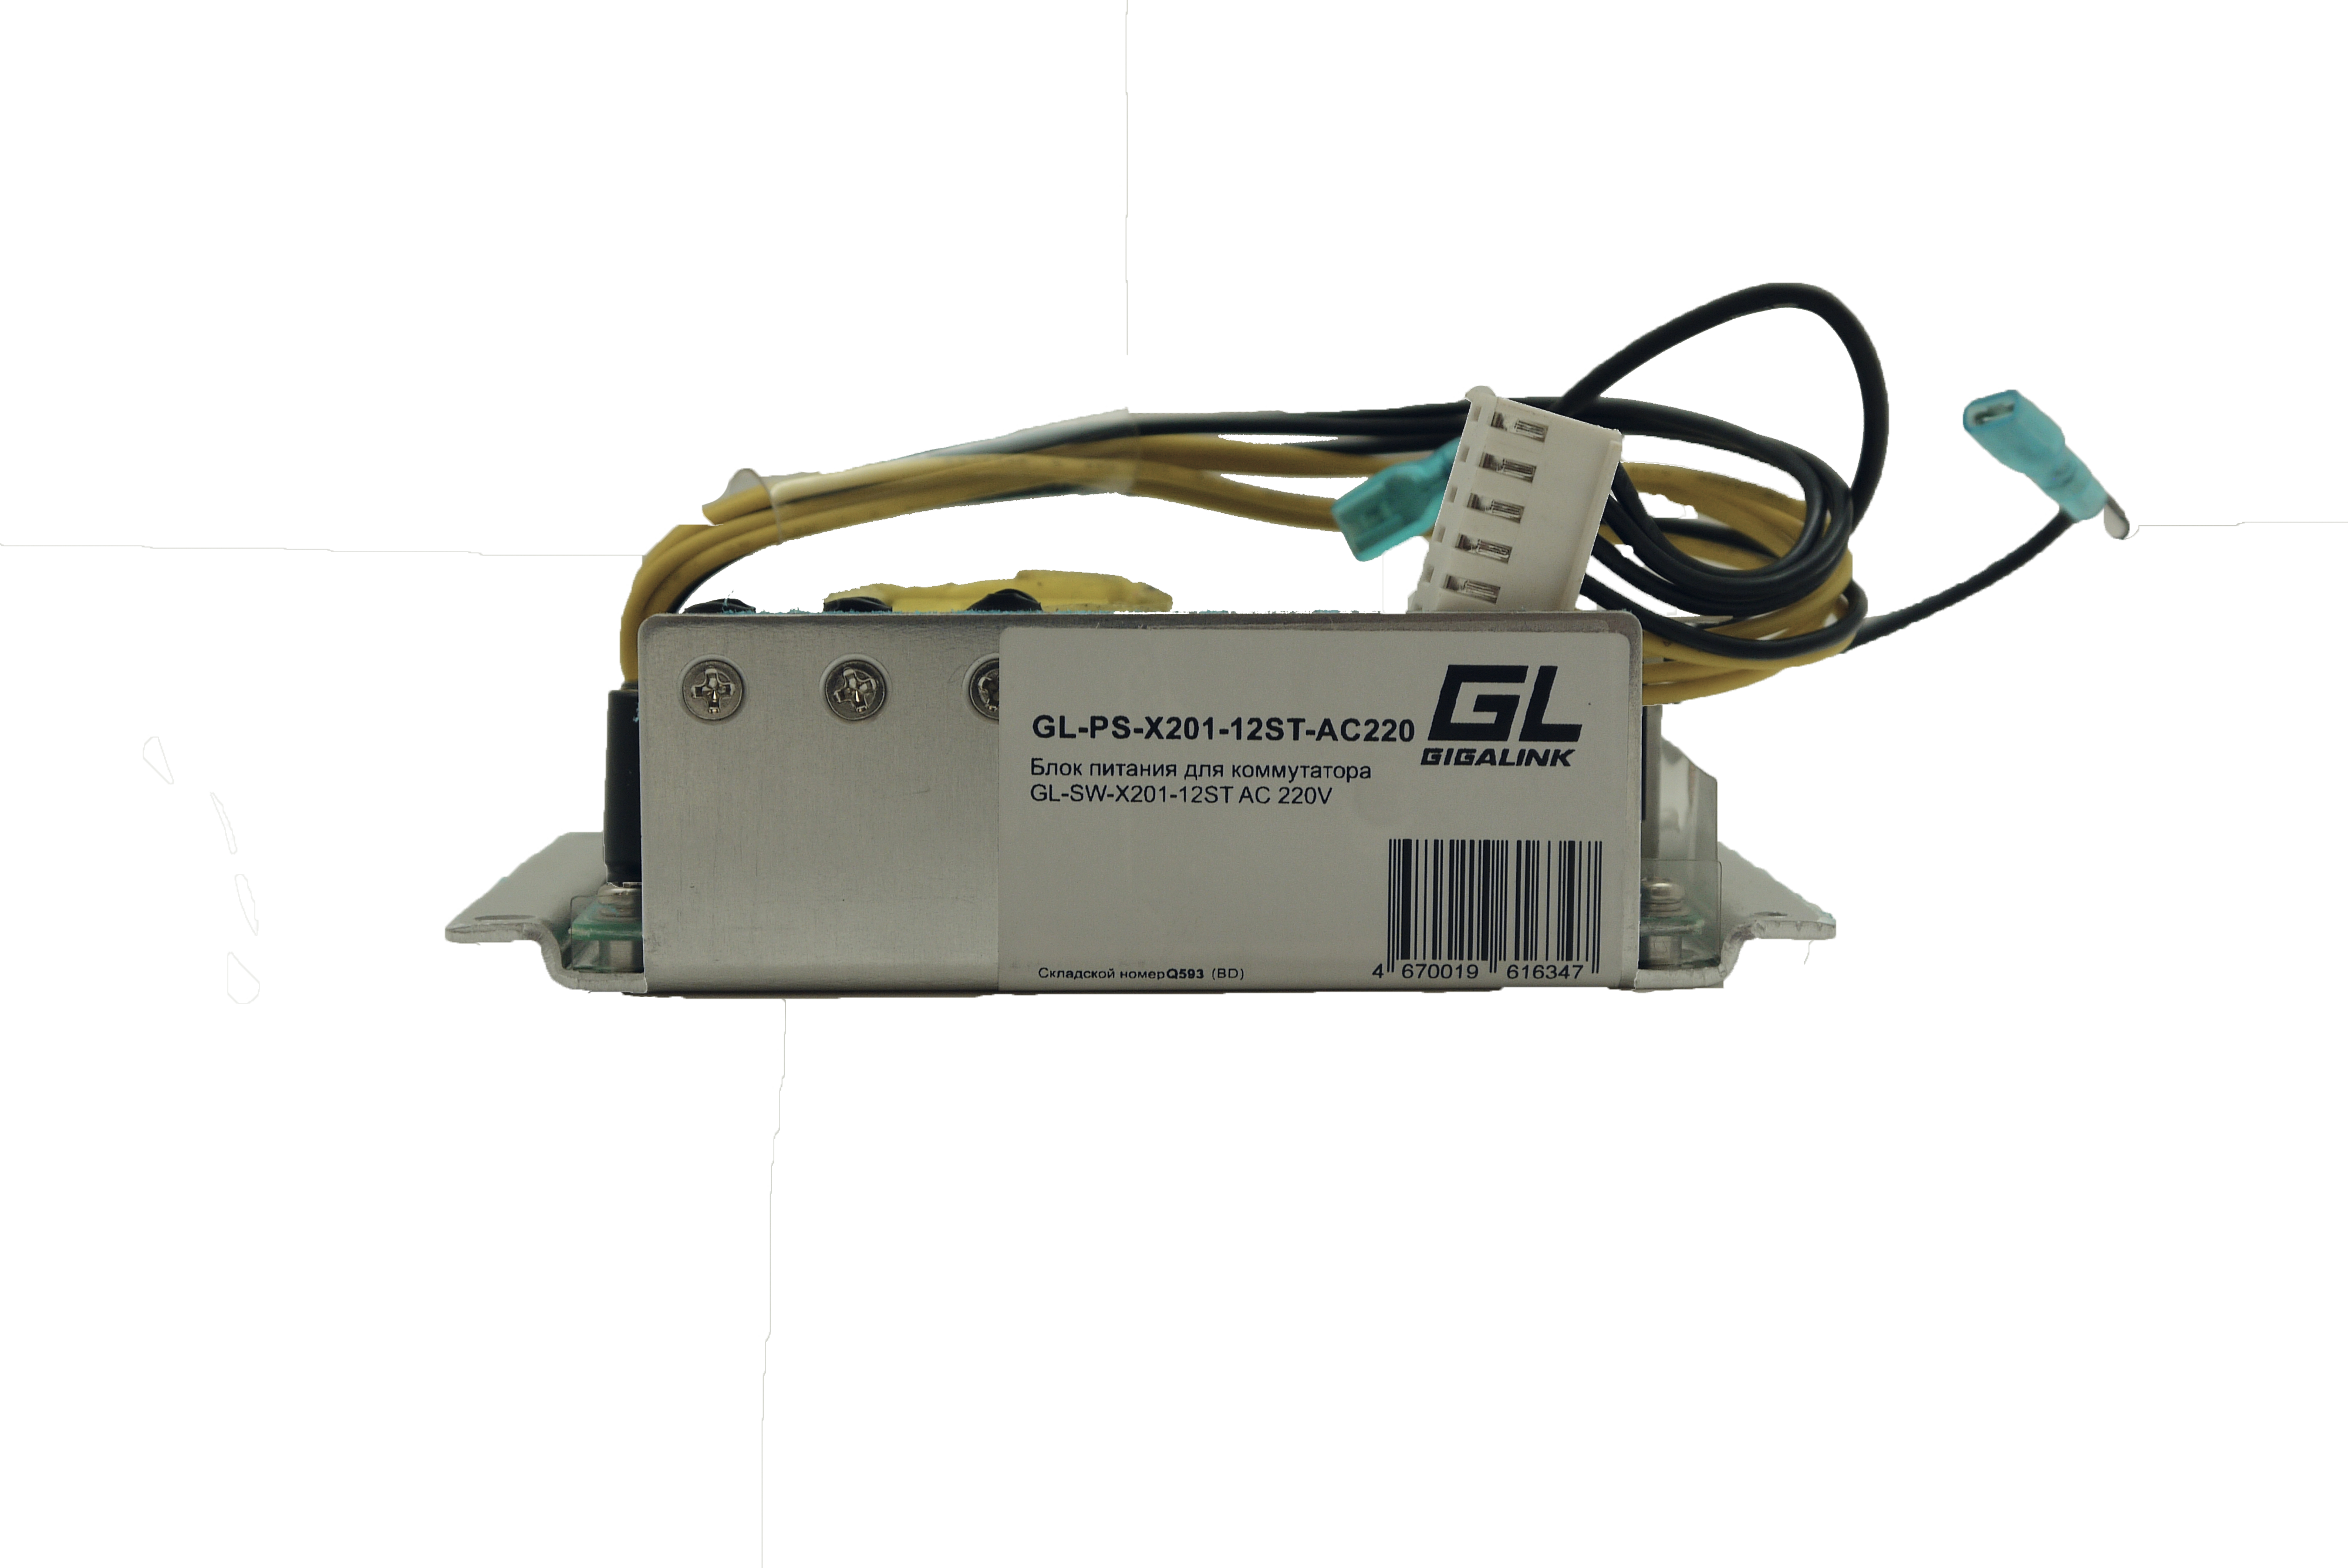 Блок питаня для коммутатора GL-SW-X201-12ST AC 220V